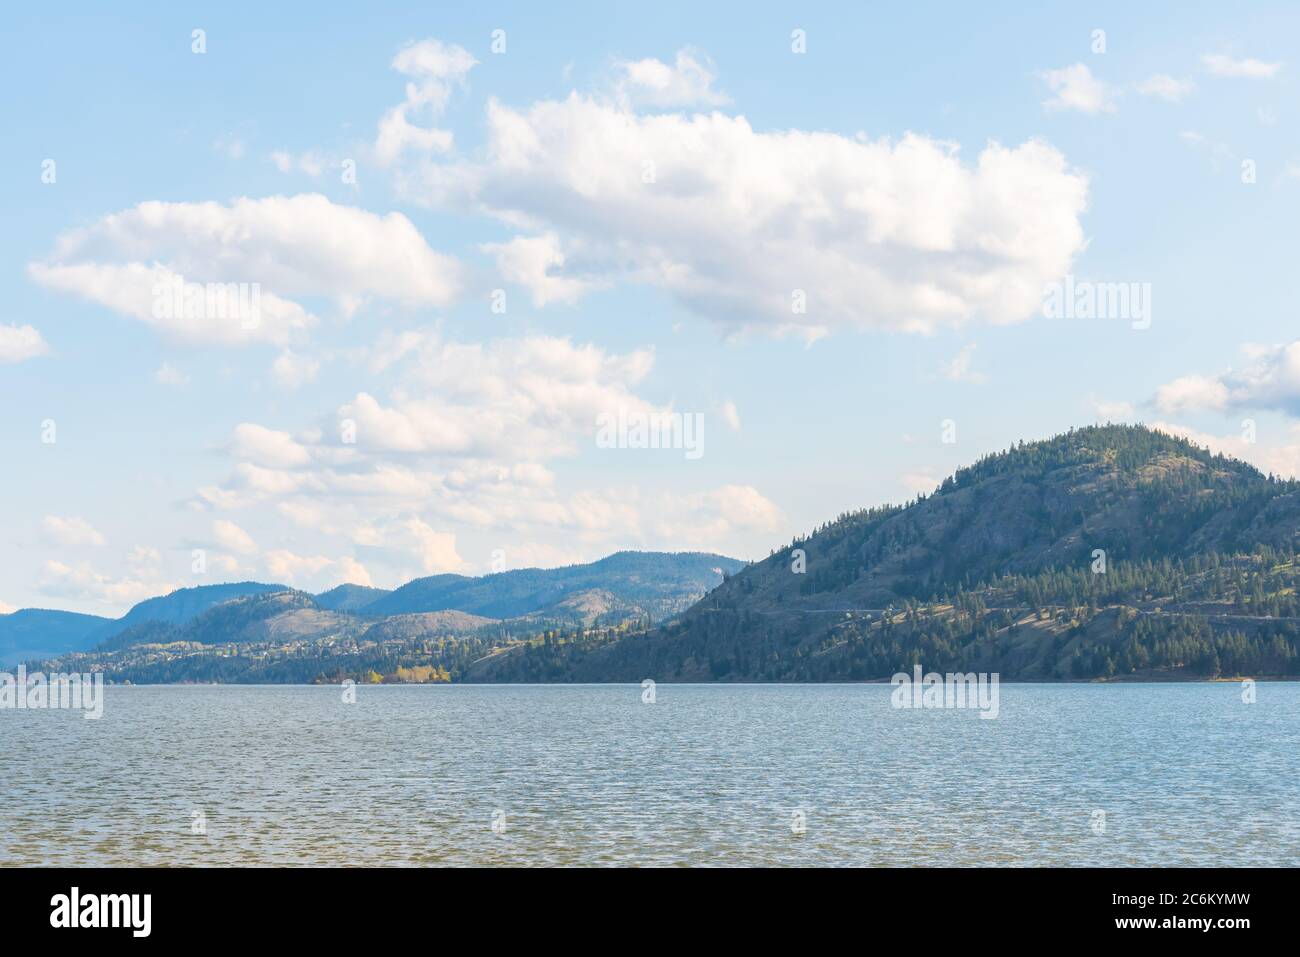 Vista de lago tranquilo, montañas boscosas, y cielo azul con nubes. Foto de stock